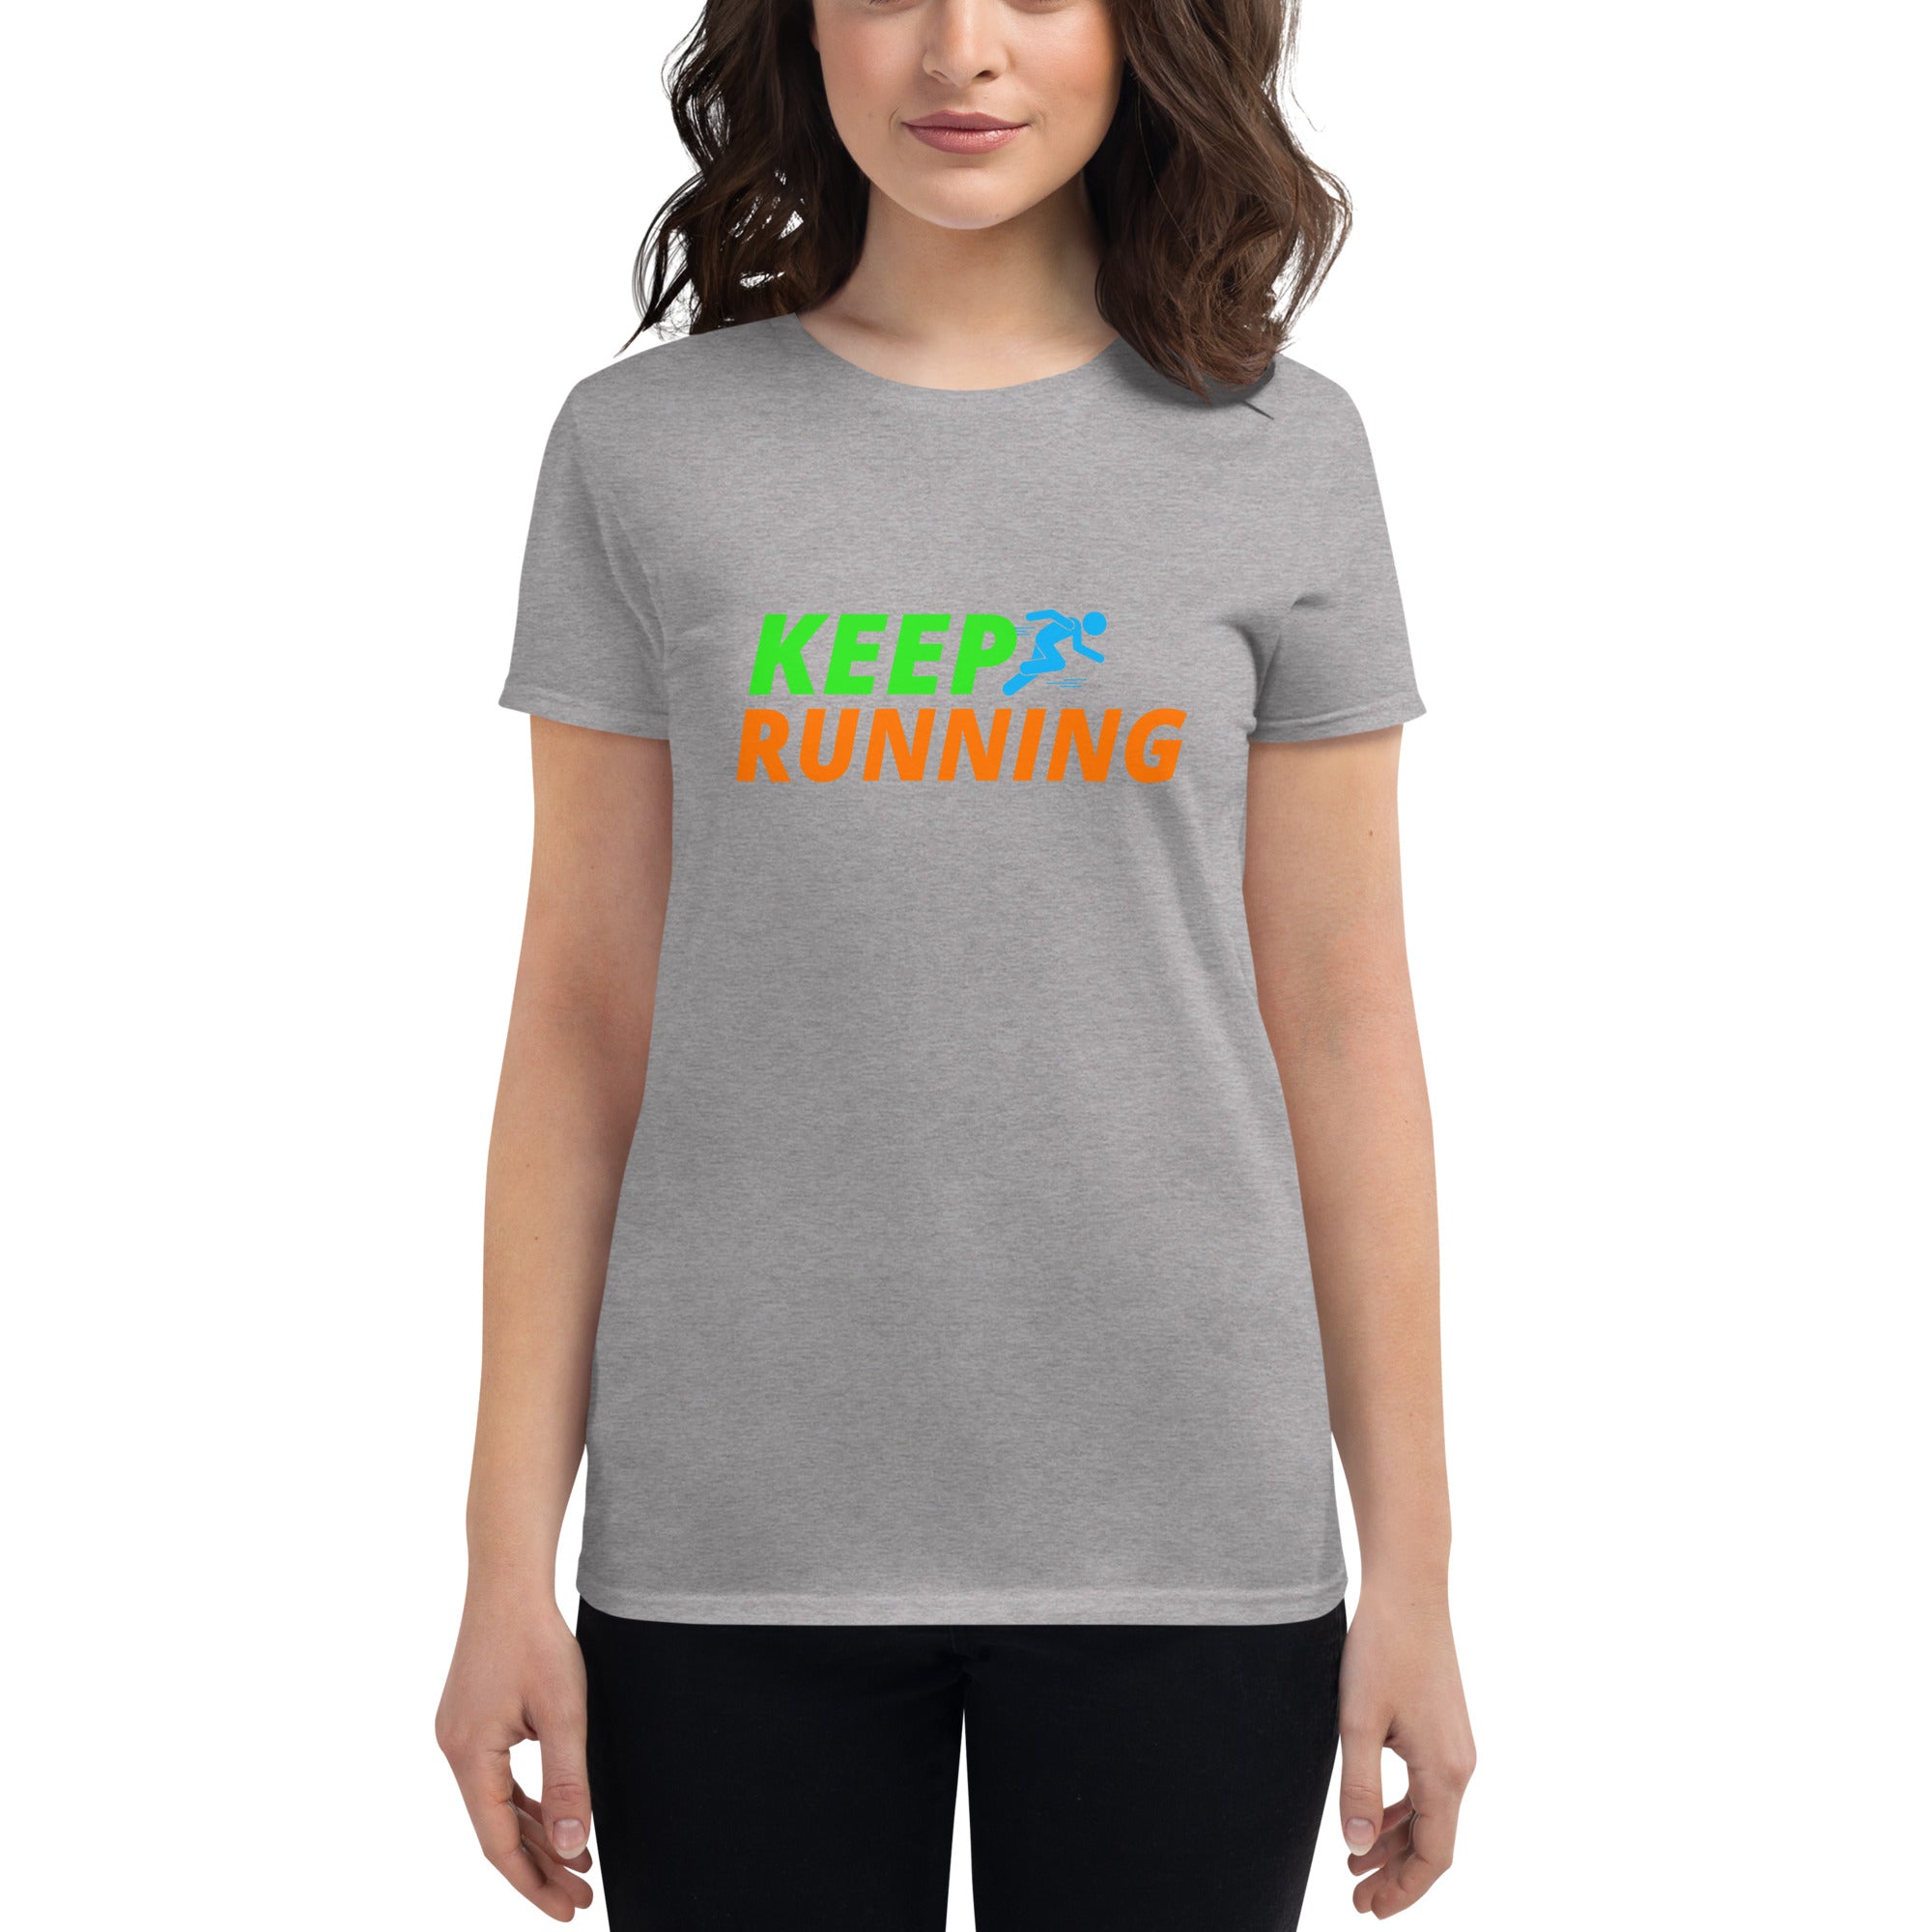 Keep Running Women's Fitted T-Shirt